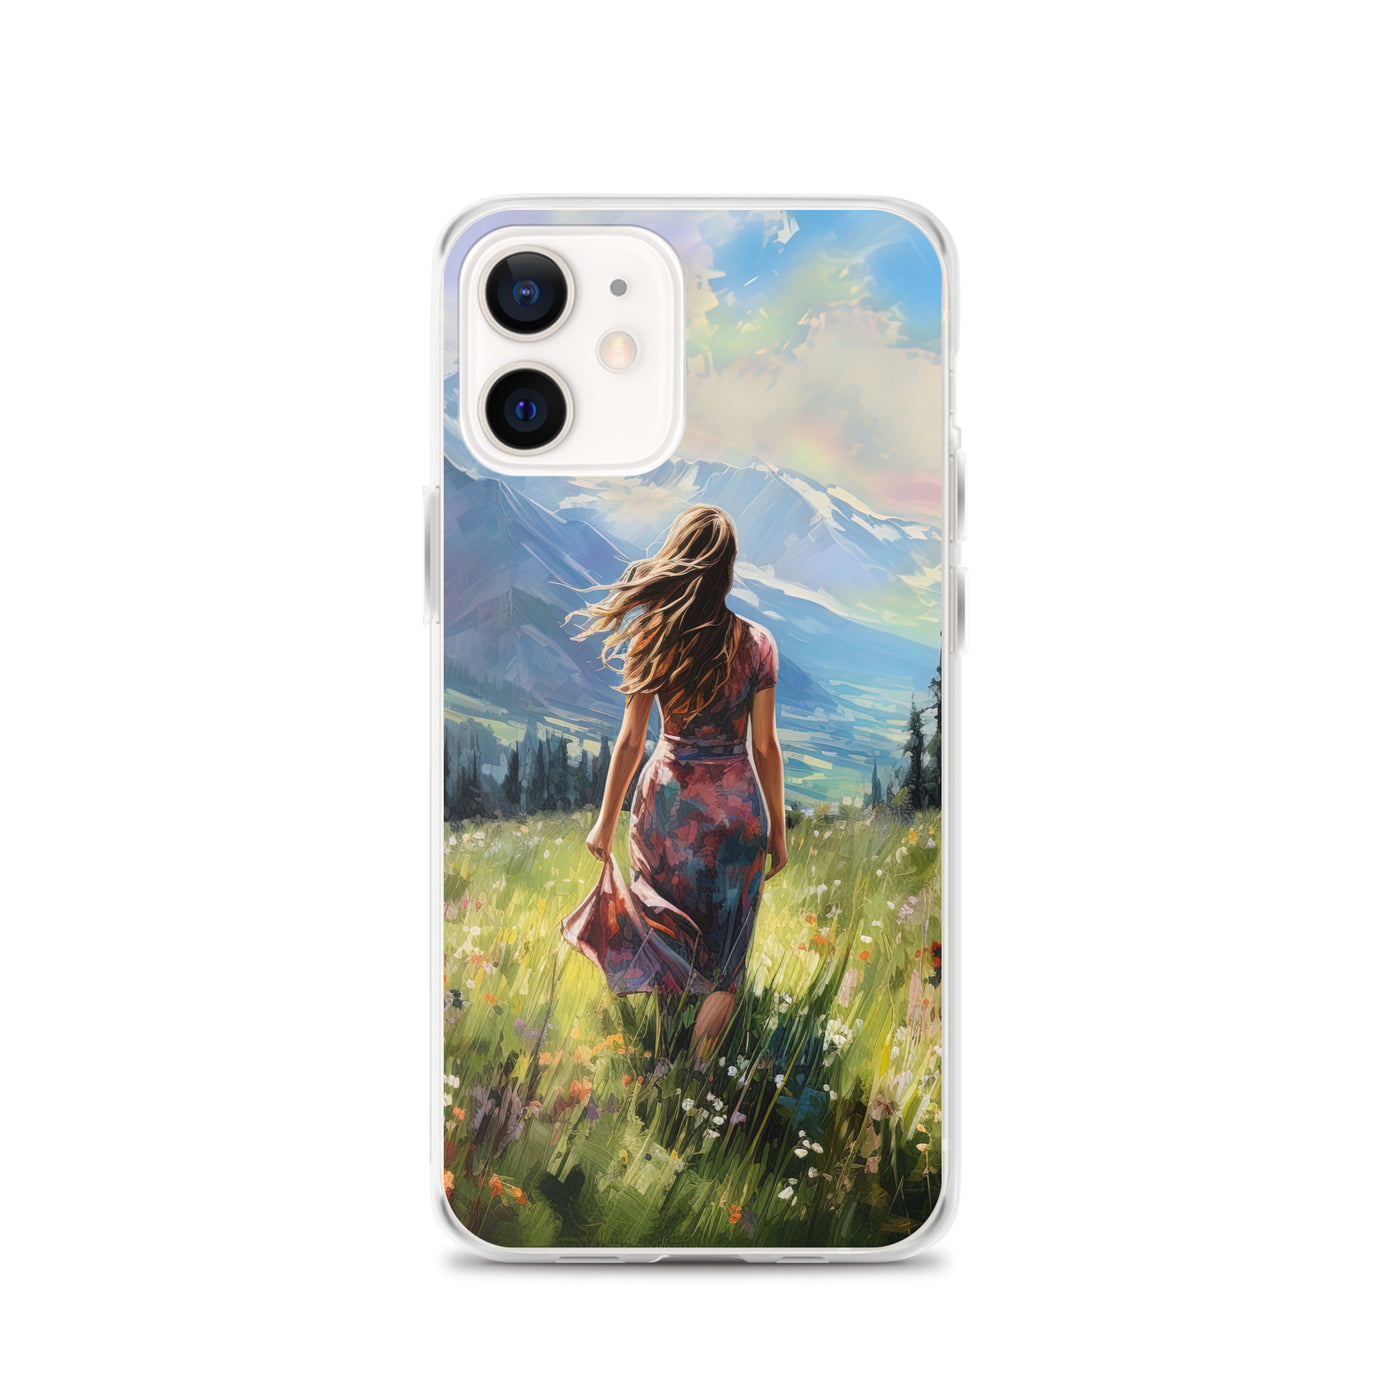 Frau mit langen Kleid im Feld mit Blumen - Berge im Hintergrund - Malerei - iPhone Schutzhülle (durchsichtig) berge xxx iPhone 12